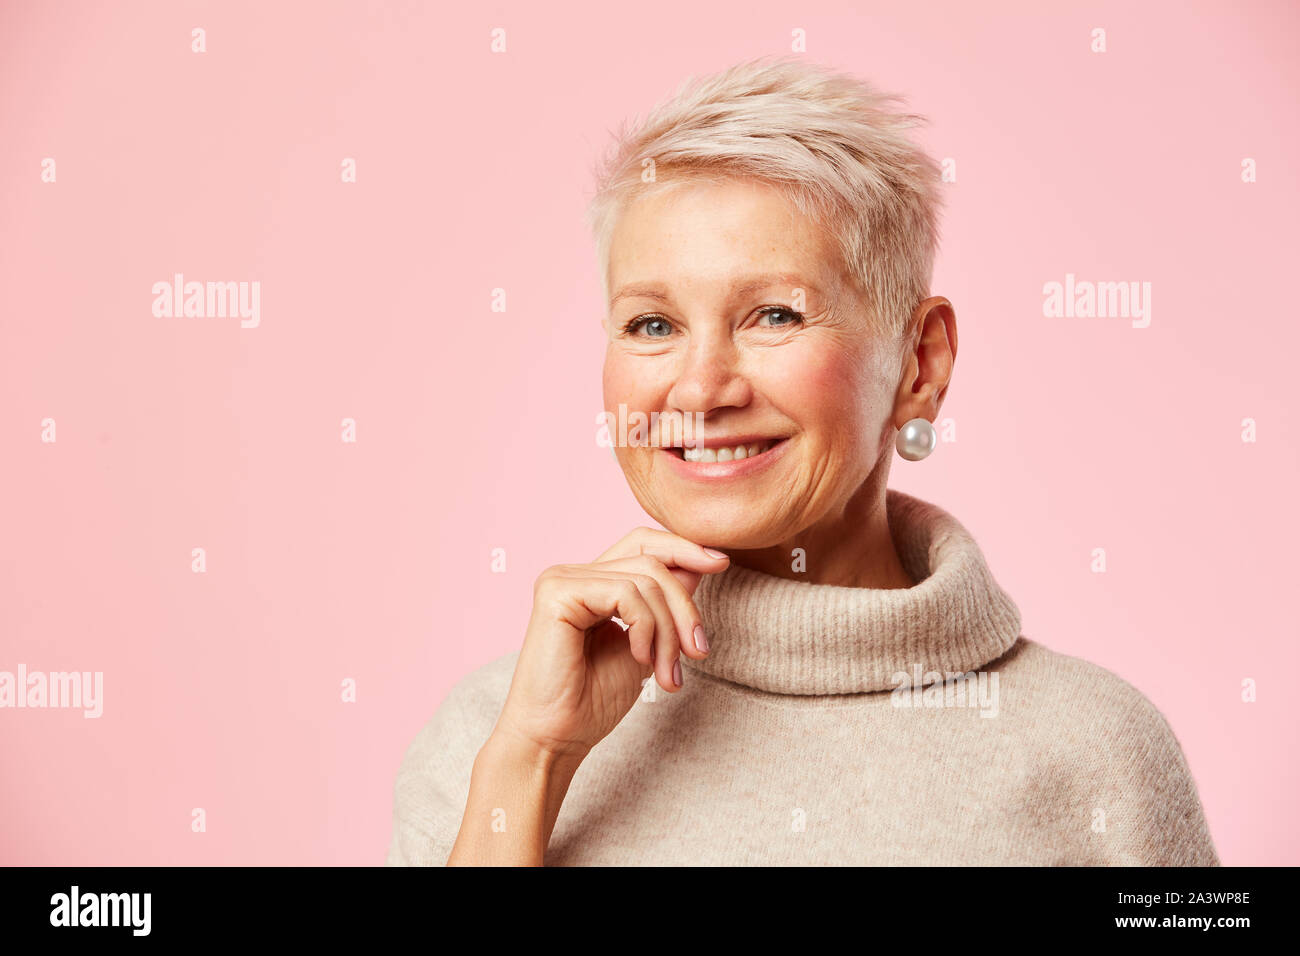 Magnifique Portrait de femme mature avec de courts cheveux blonds smiling at camera isolé sur fond rose Banque D'Images